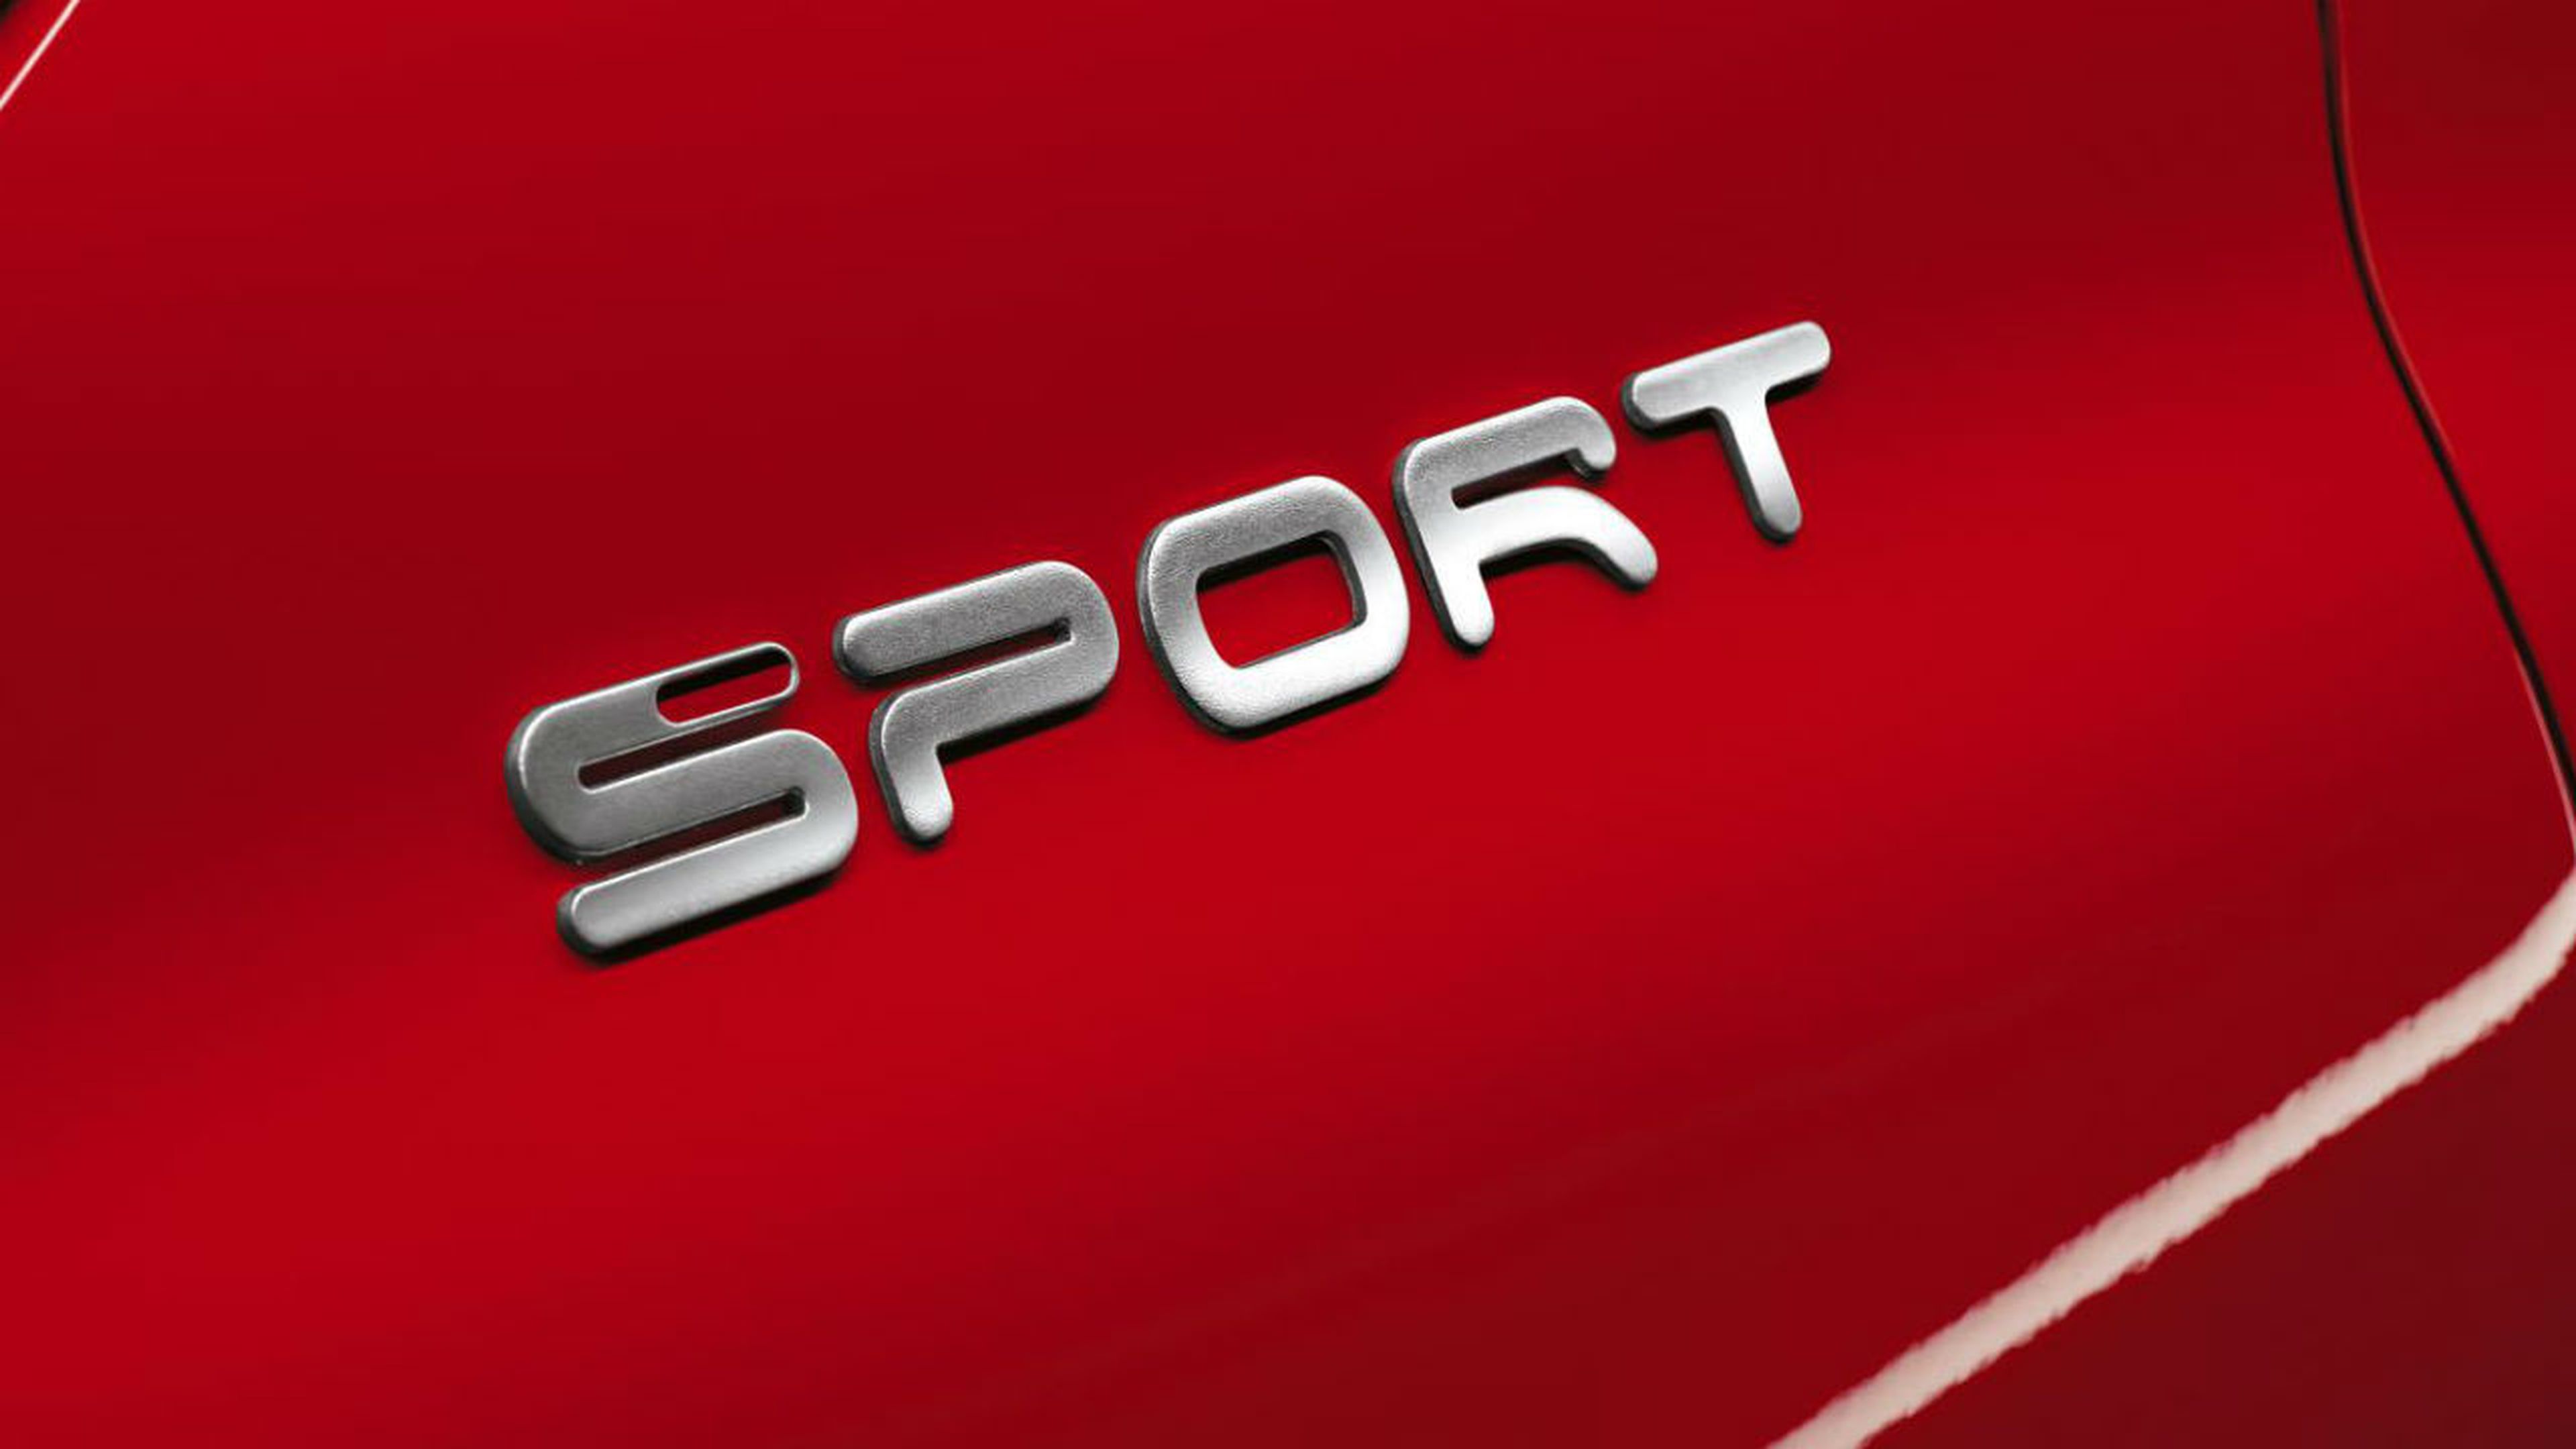 Fiat 500X Sport